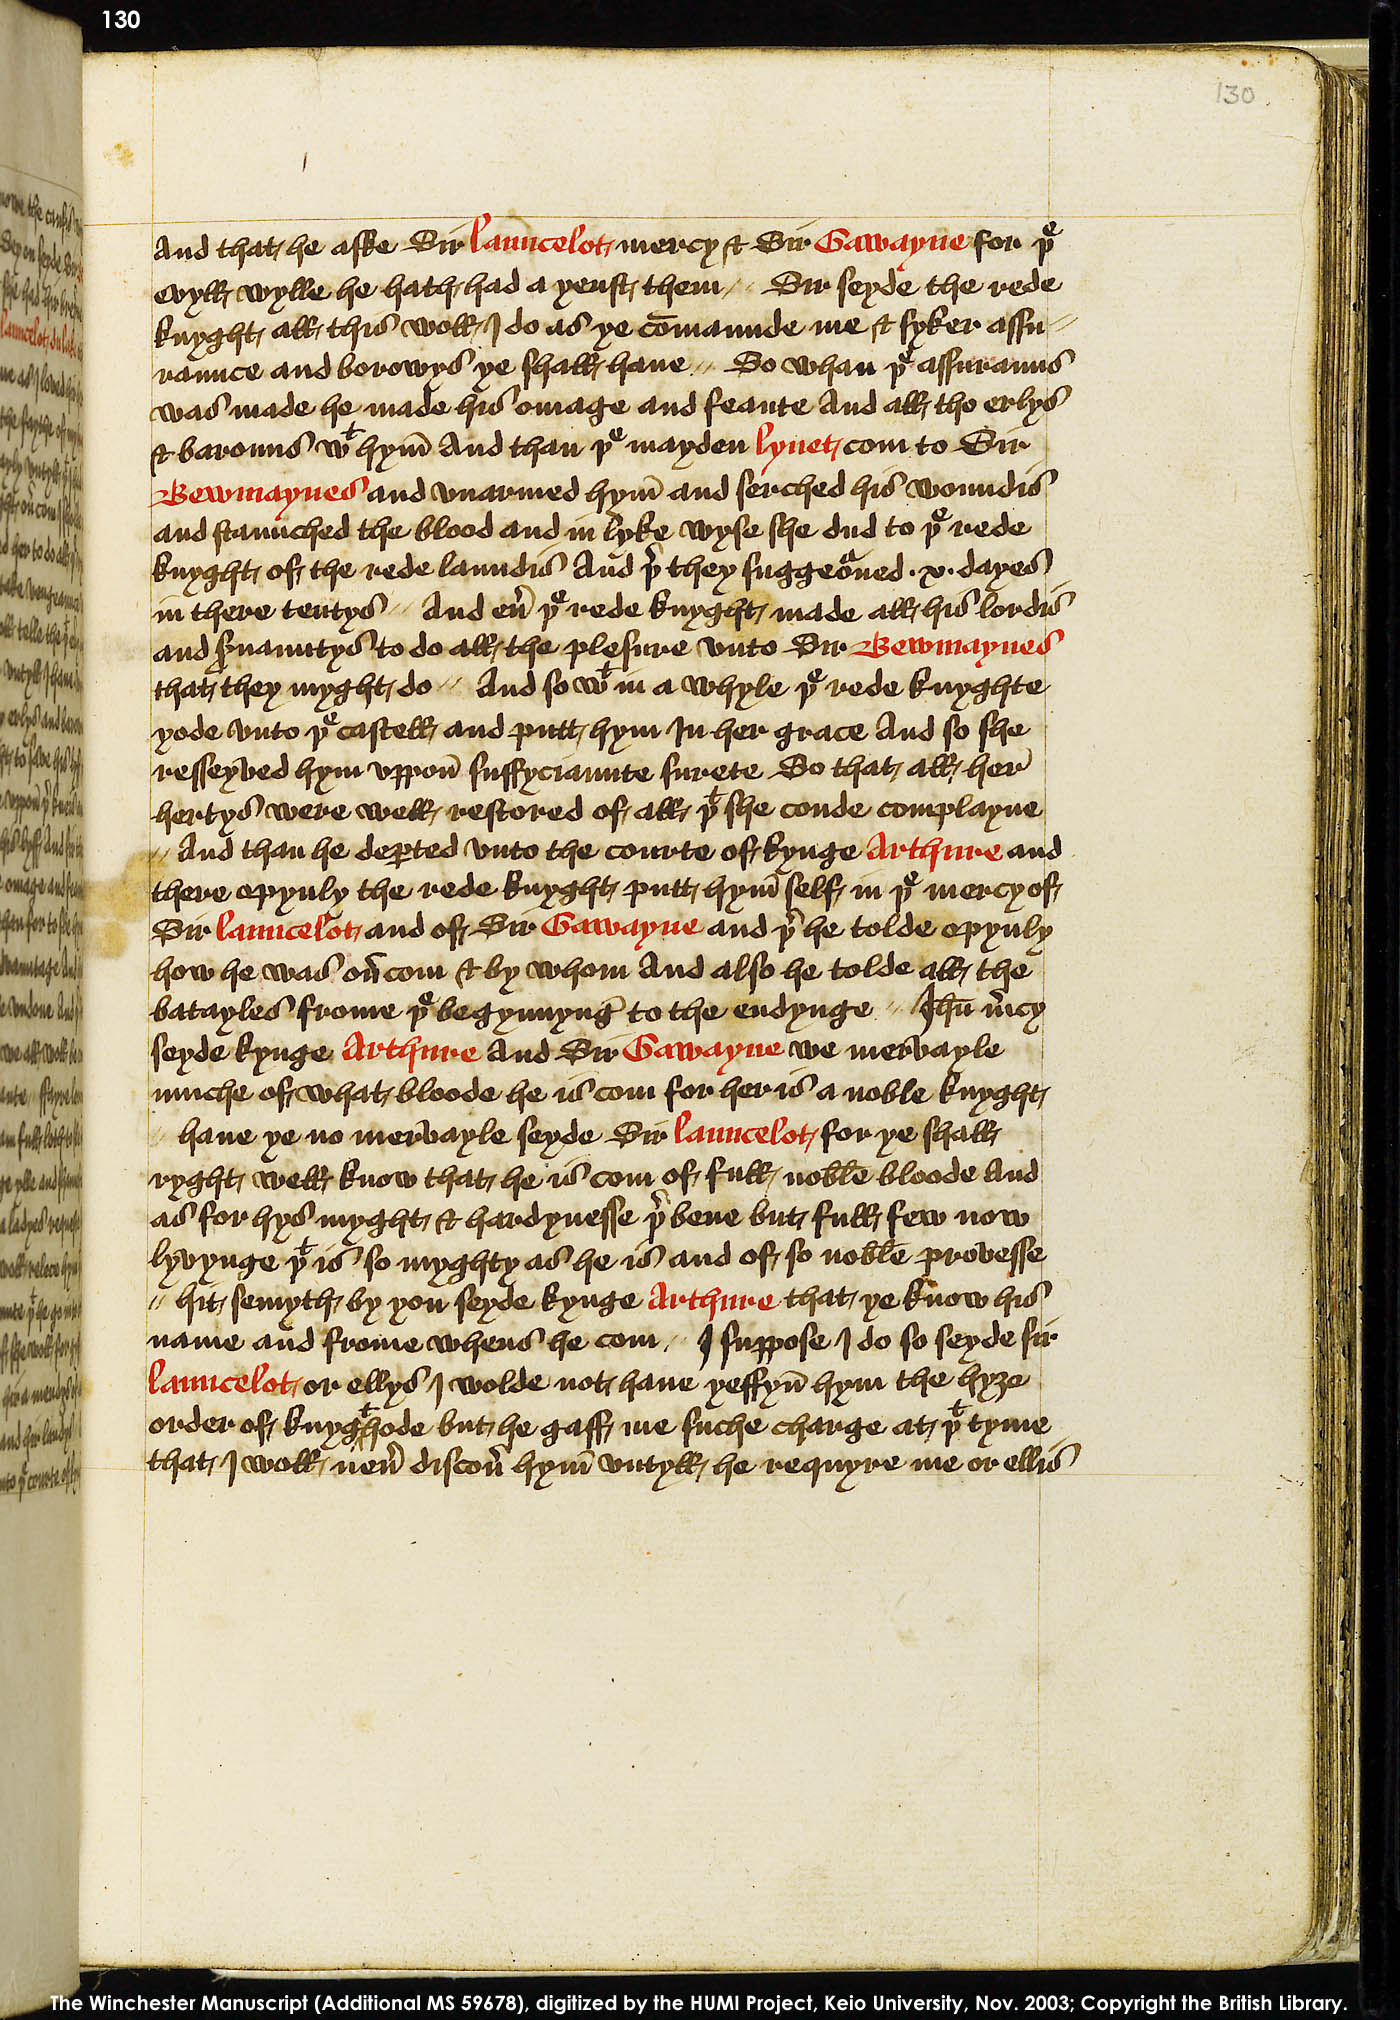 Folio 130r